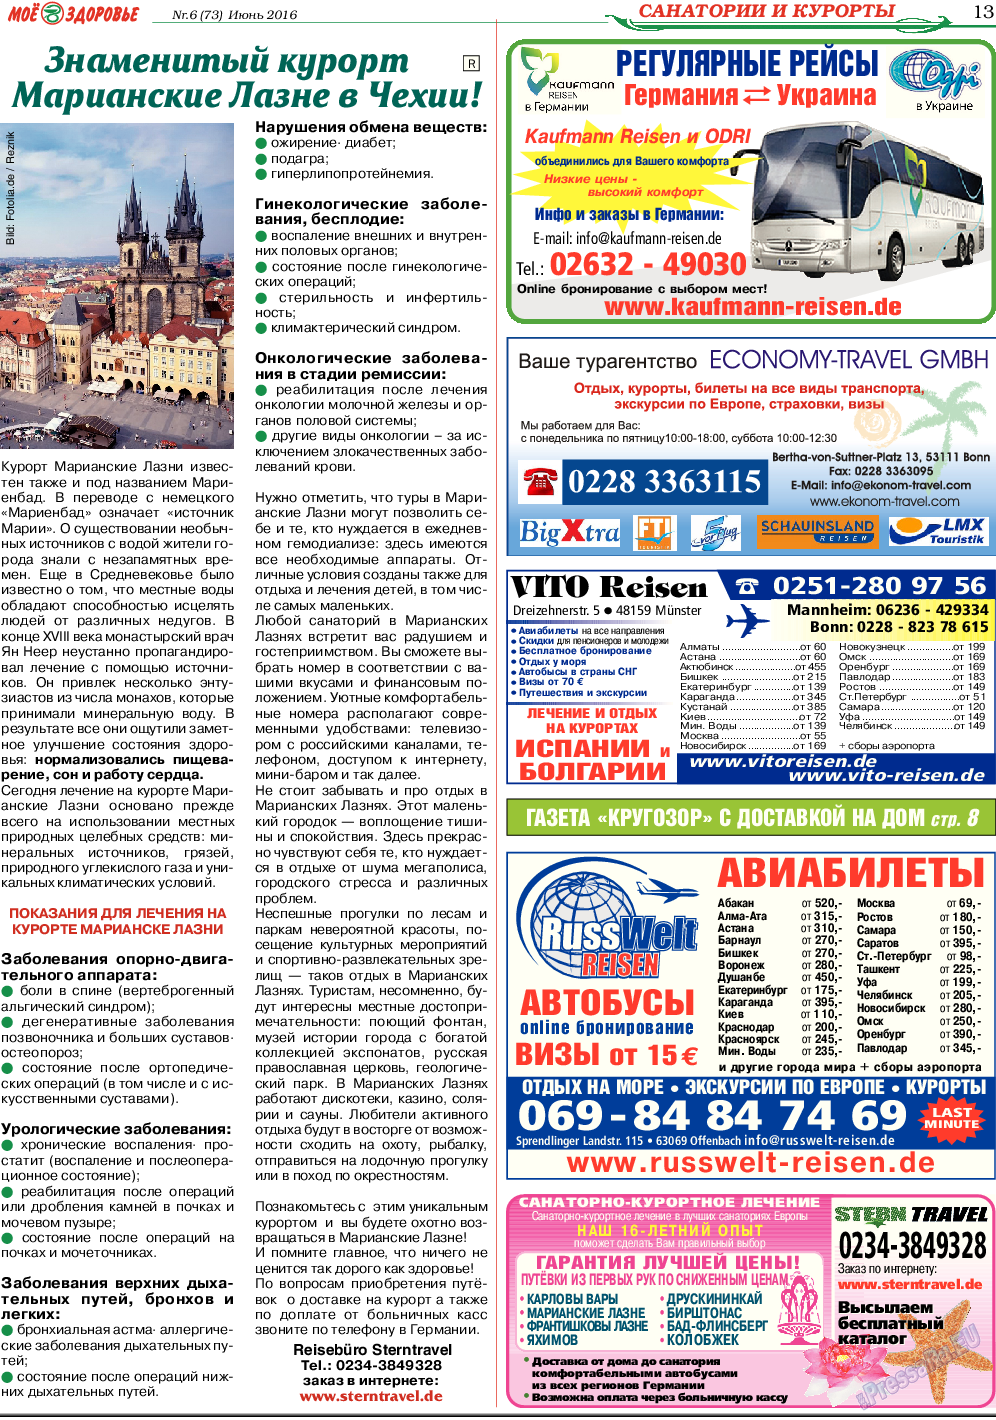 Кругозор, газета. 2016 №6 стр.13